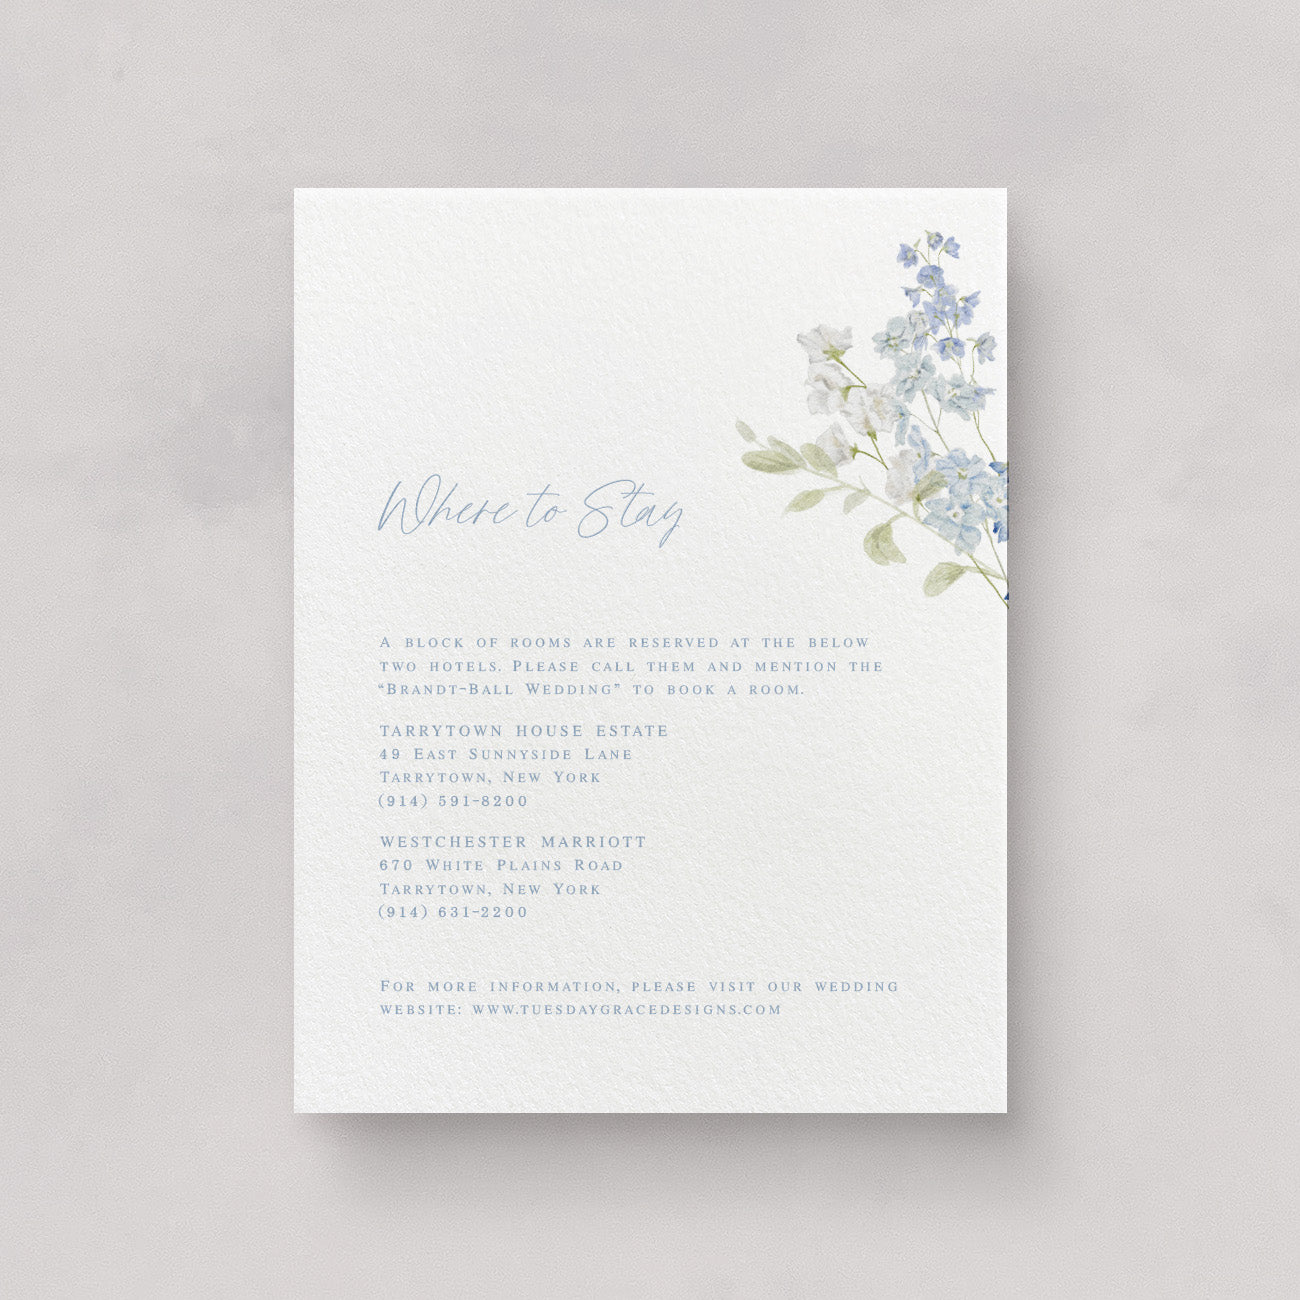 Cape Cod Wedding Information Card